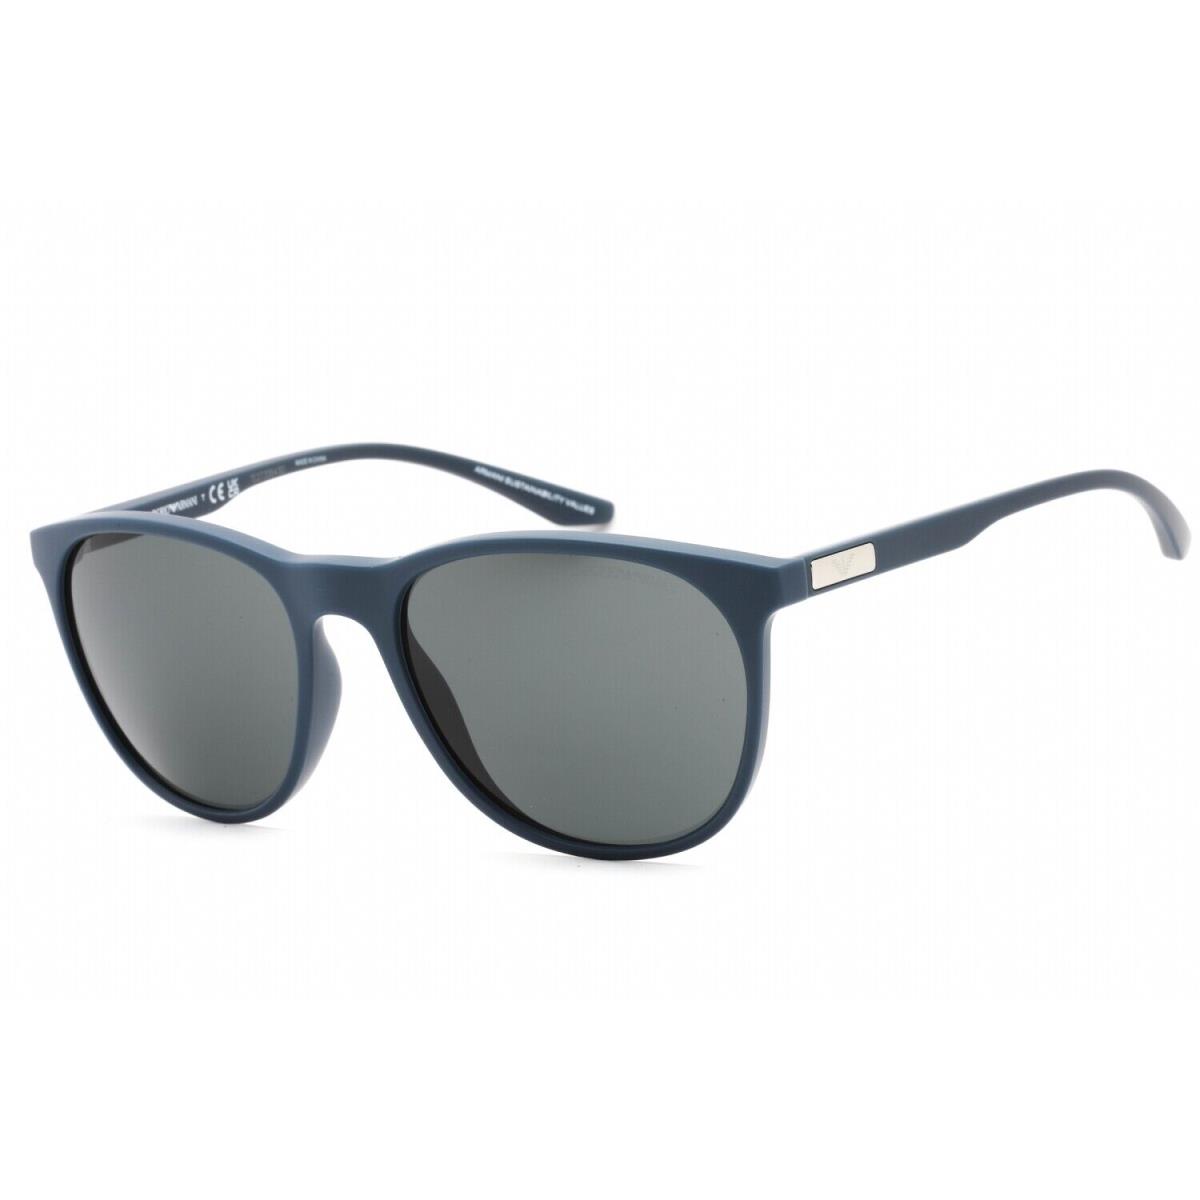 Emporio Armani EA4210-576387-56 Sunglasses Size 56mm 145mm 18mm Blue Men